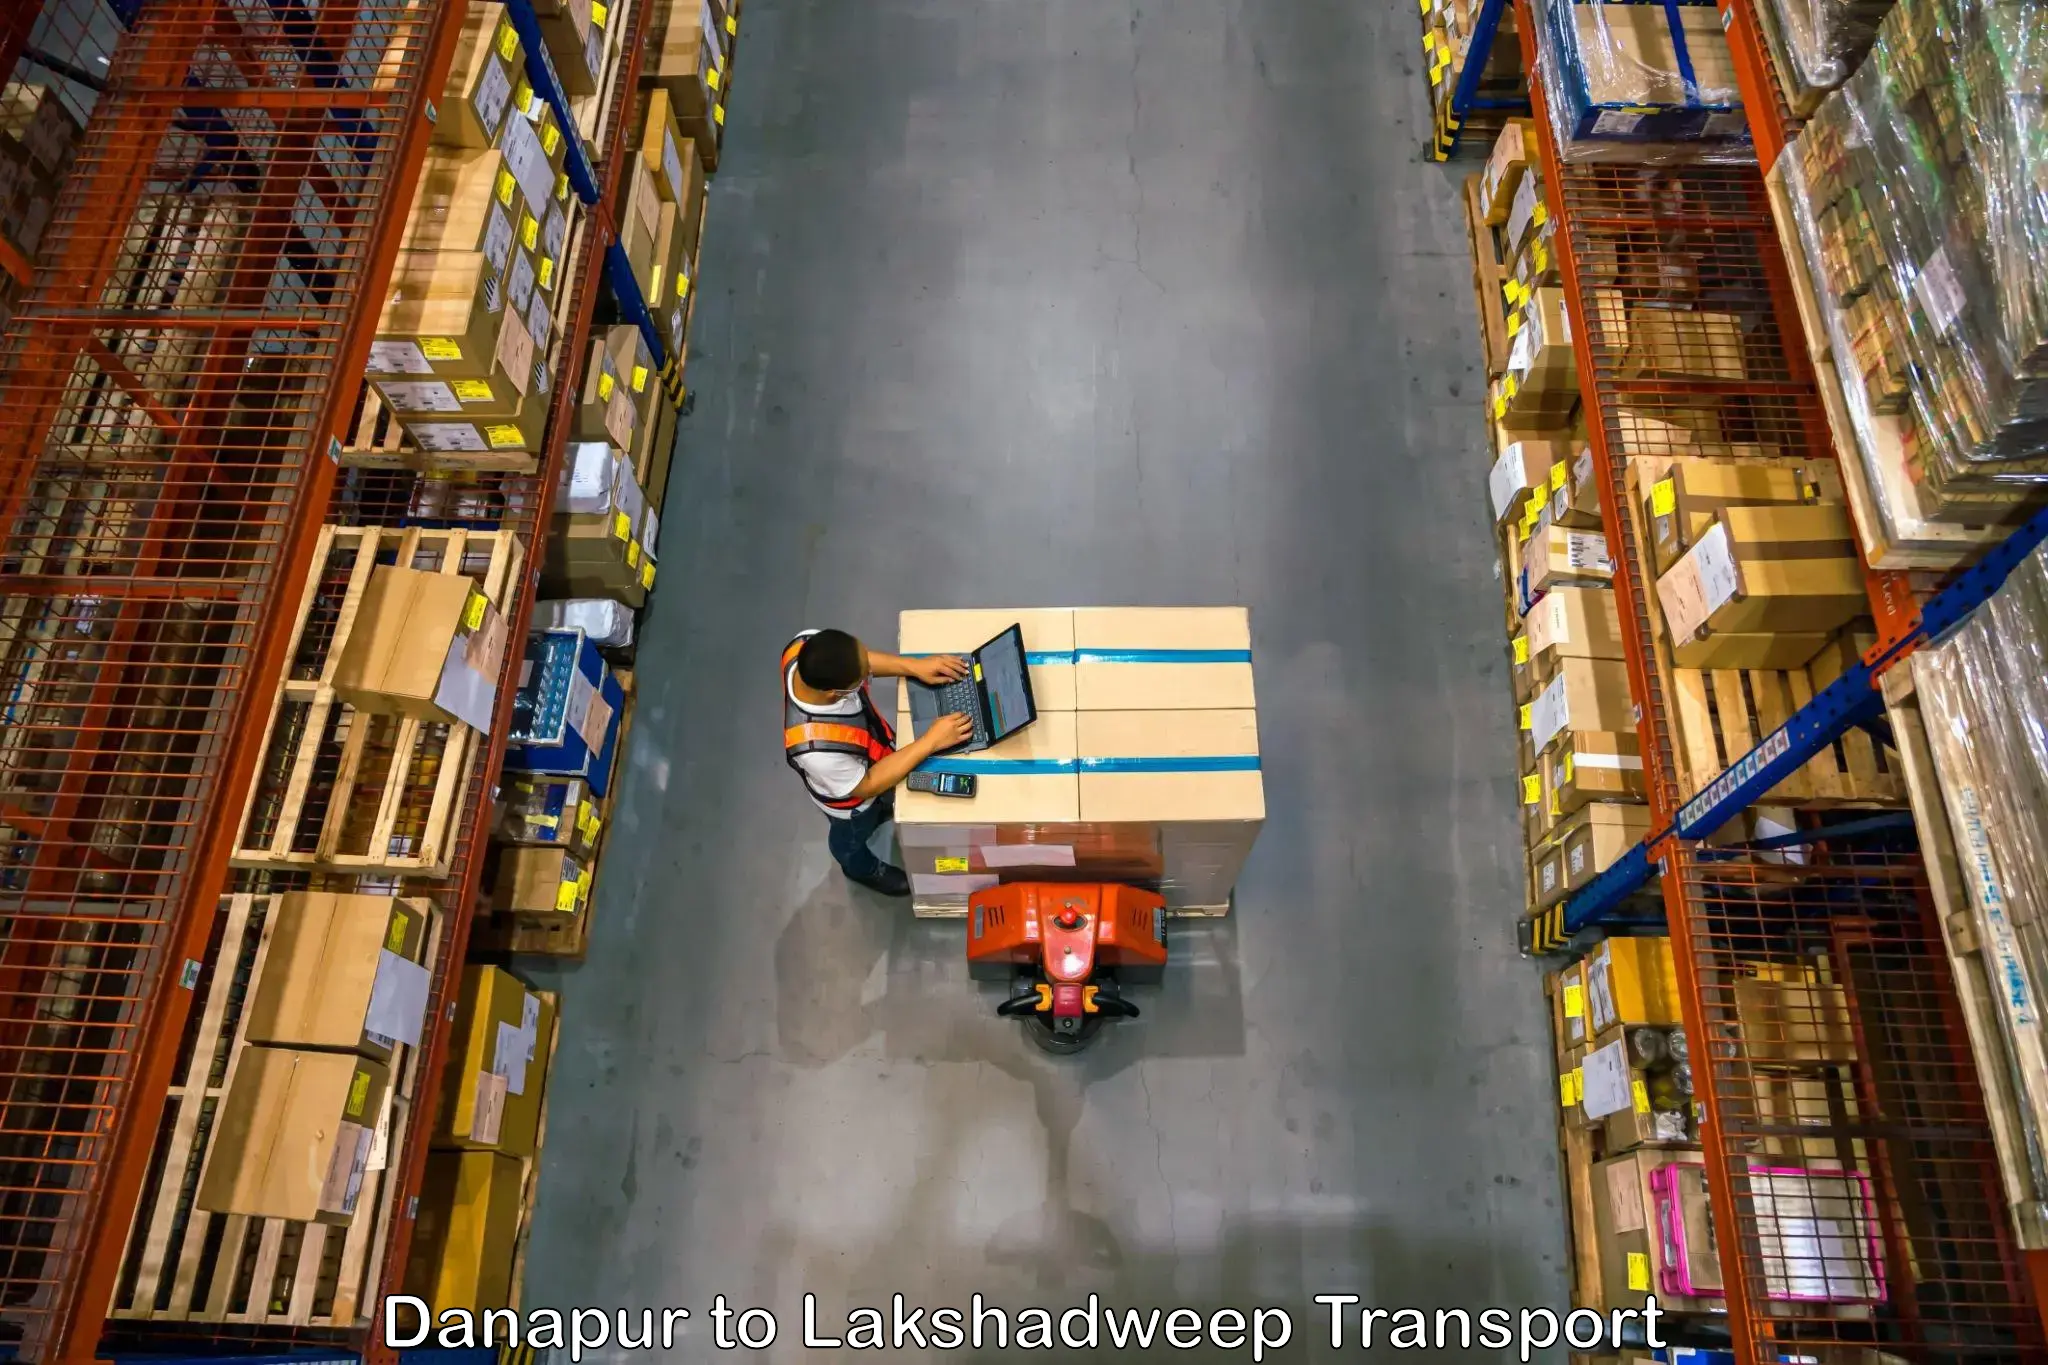 Shipping partner Danapur to Lakshadweep